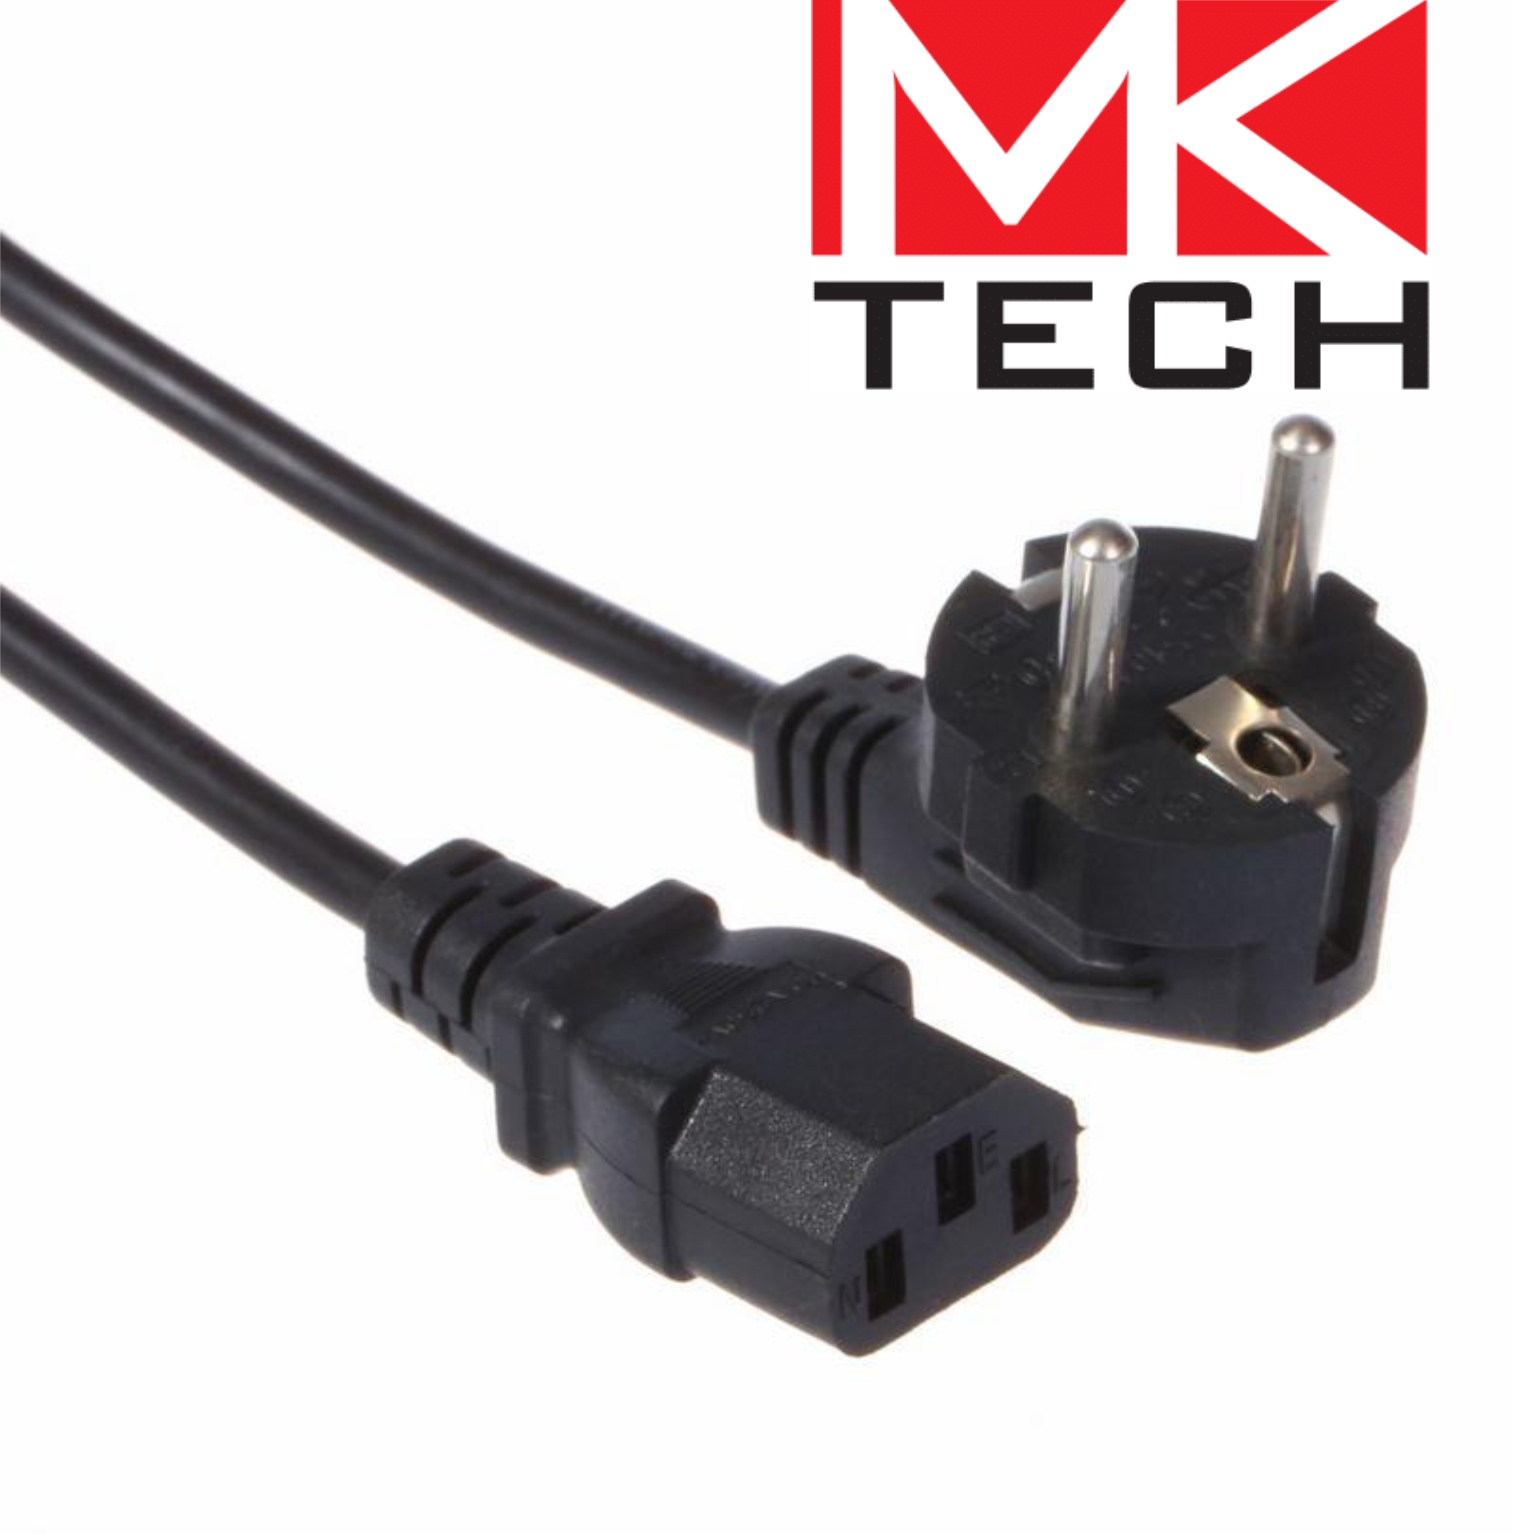 Зах. кабел за компютър 1.2m Черен MKTECH LQ